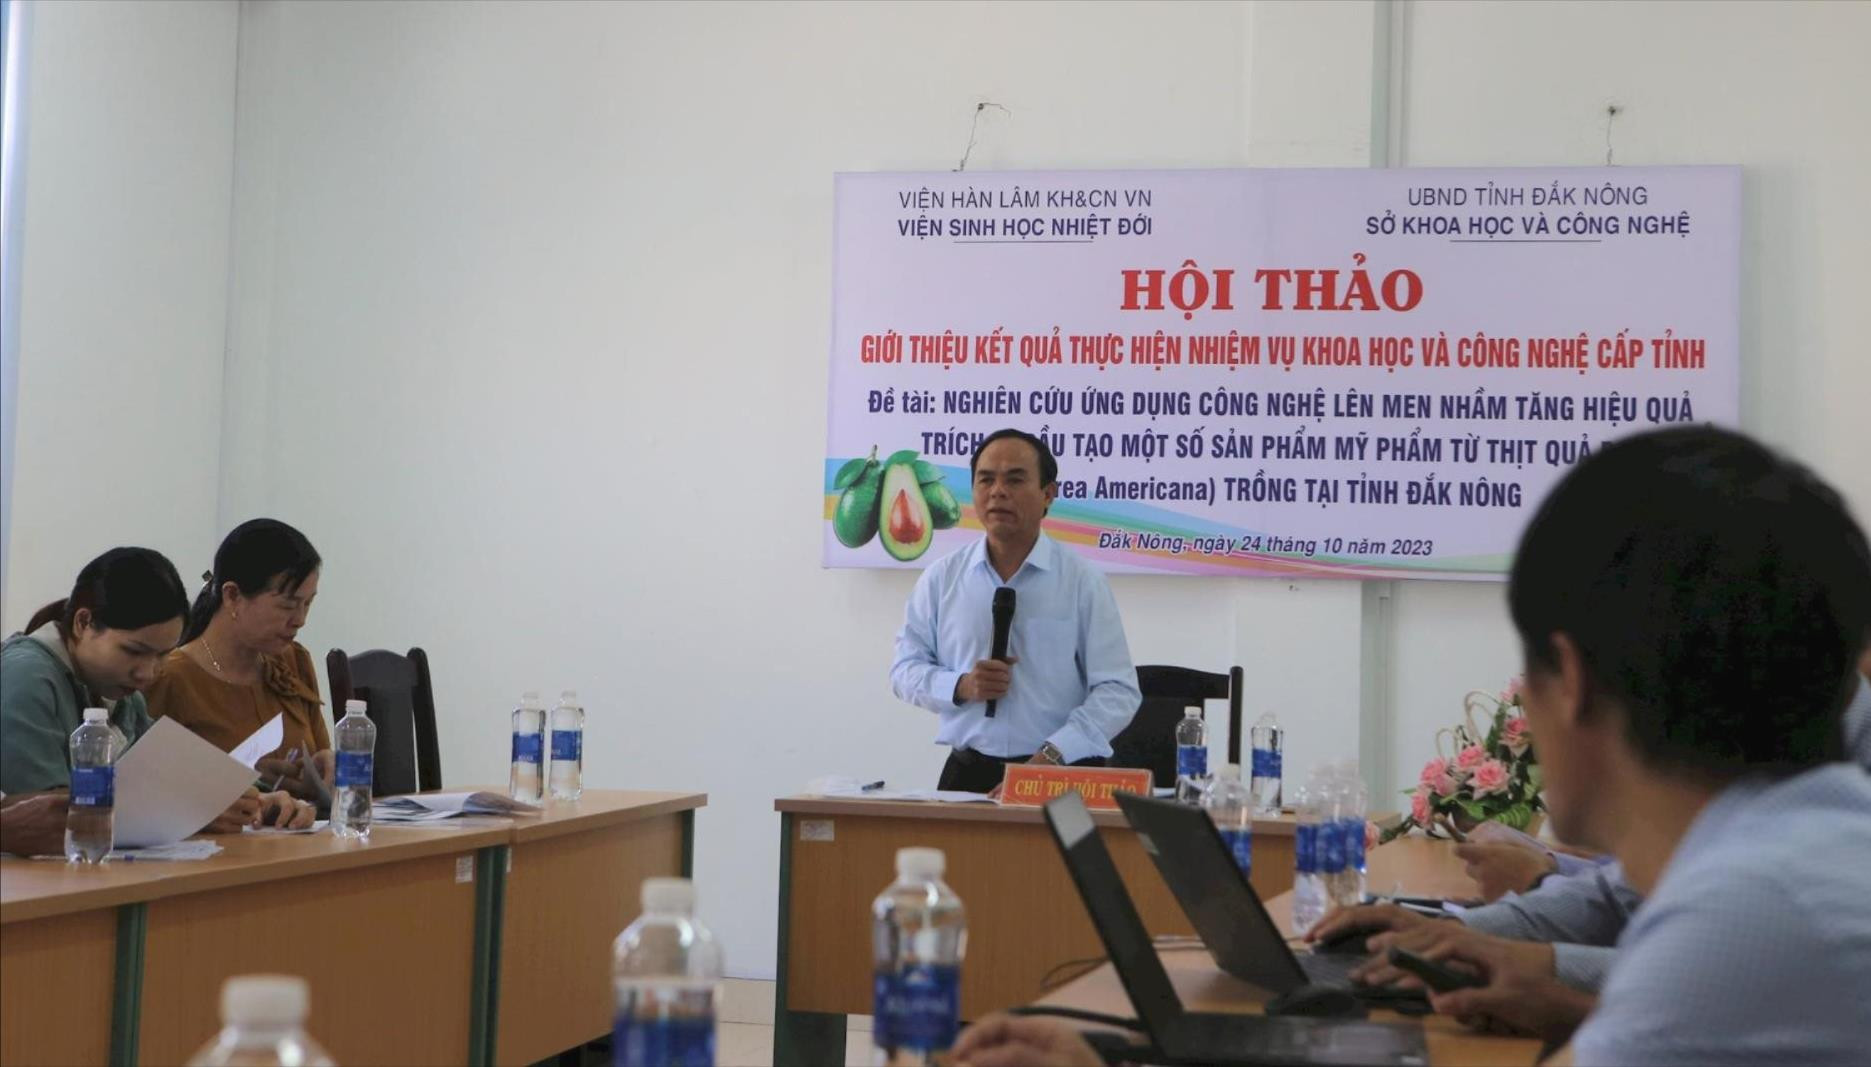 Sở KHCN Đắk Nông phối hợp với Viện Sinh học nhiệt đới (Viện Hàn lâm KHCN Việt Nam) tổ chức Hội thảo “Ứng dụng công nghệ lên men thu nhận dầu và tạo một số sản phẩm mỹ phẩm từ thịt quả bơ trồng tại tỉnh Đắk Nông” vào tháng 10/2023